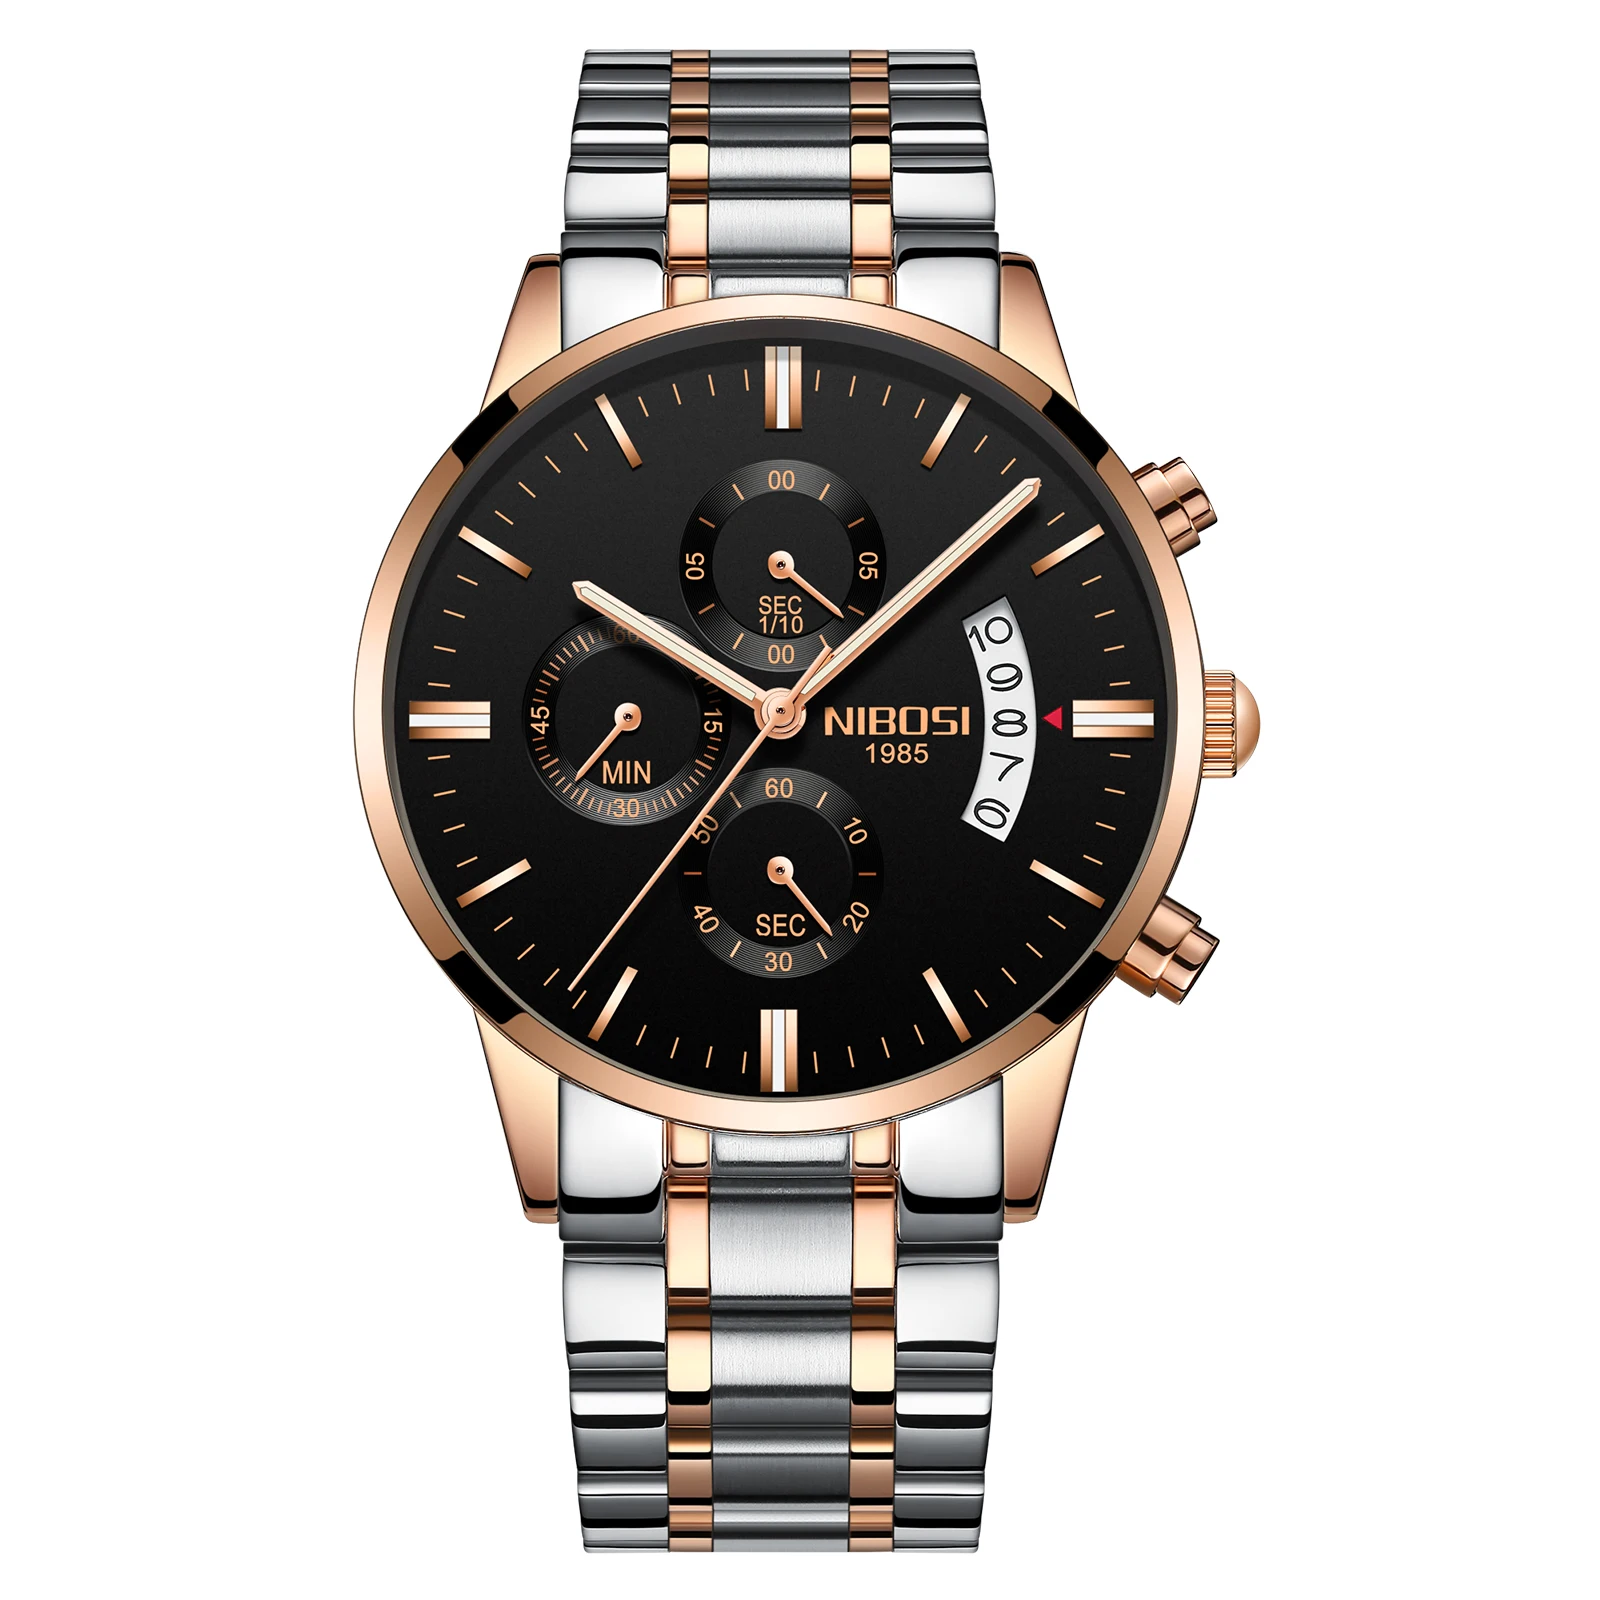 NIBOSI золотые кварцевые часы лучший бренд роскошных Для мужчин часы моды человек Наручные часы Нержавеющая сталь Relogio Masculino Saatler